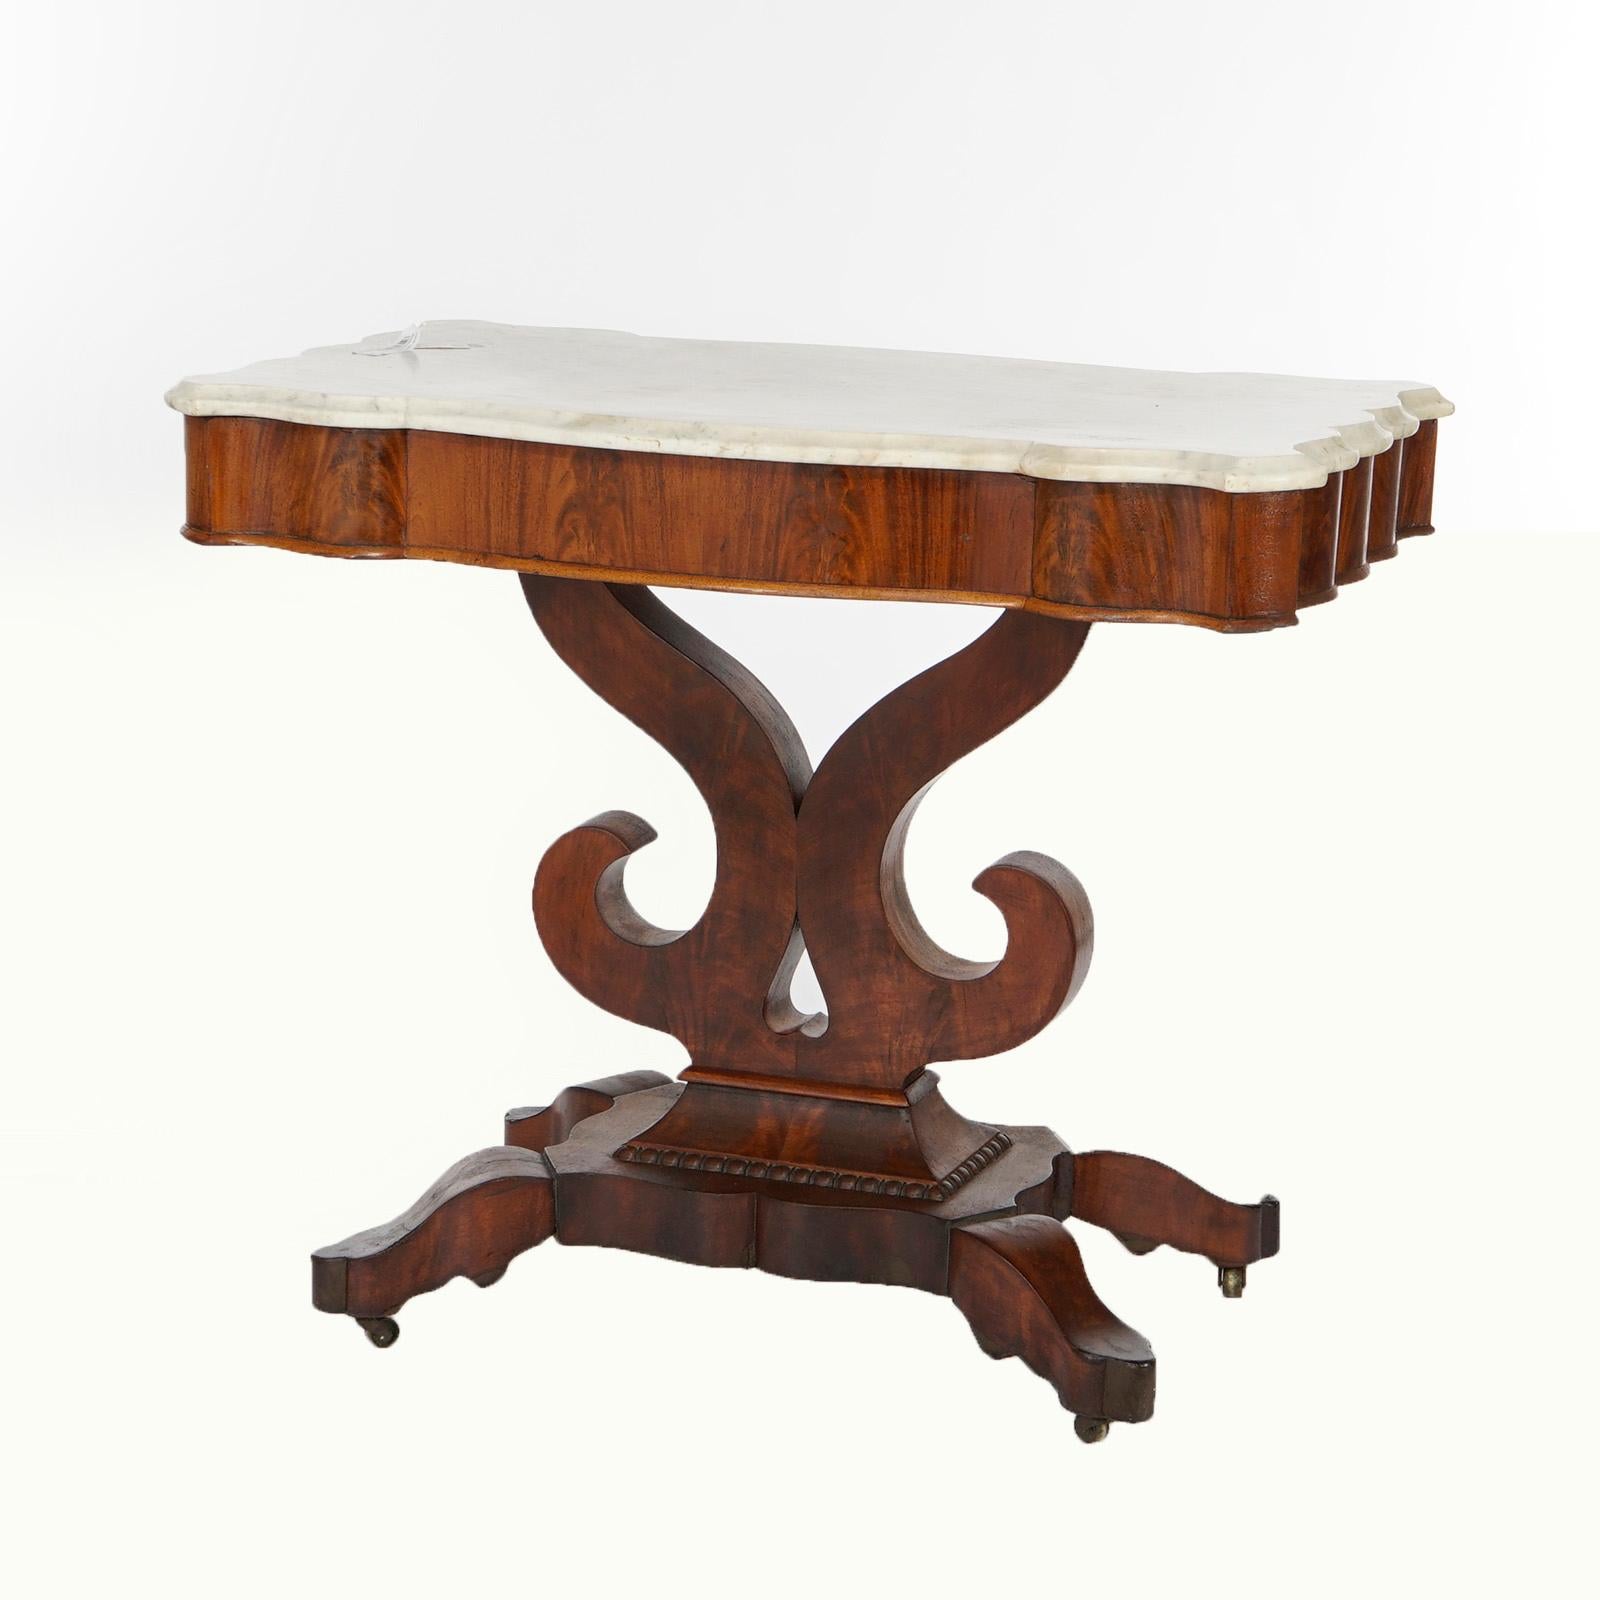 Ein antiker amerikanischer Empire-Tisch im klassischen Greco-Stil bietet eine abgeschrägte und geformte Marmorplatte über einem doppelten Rollensockel, der auf stilisierten Cabriole-Beinen steht, um 1840

Maße: 29,75''H x 35,5''B x 20,25''T.